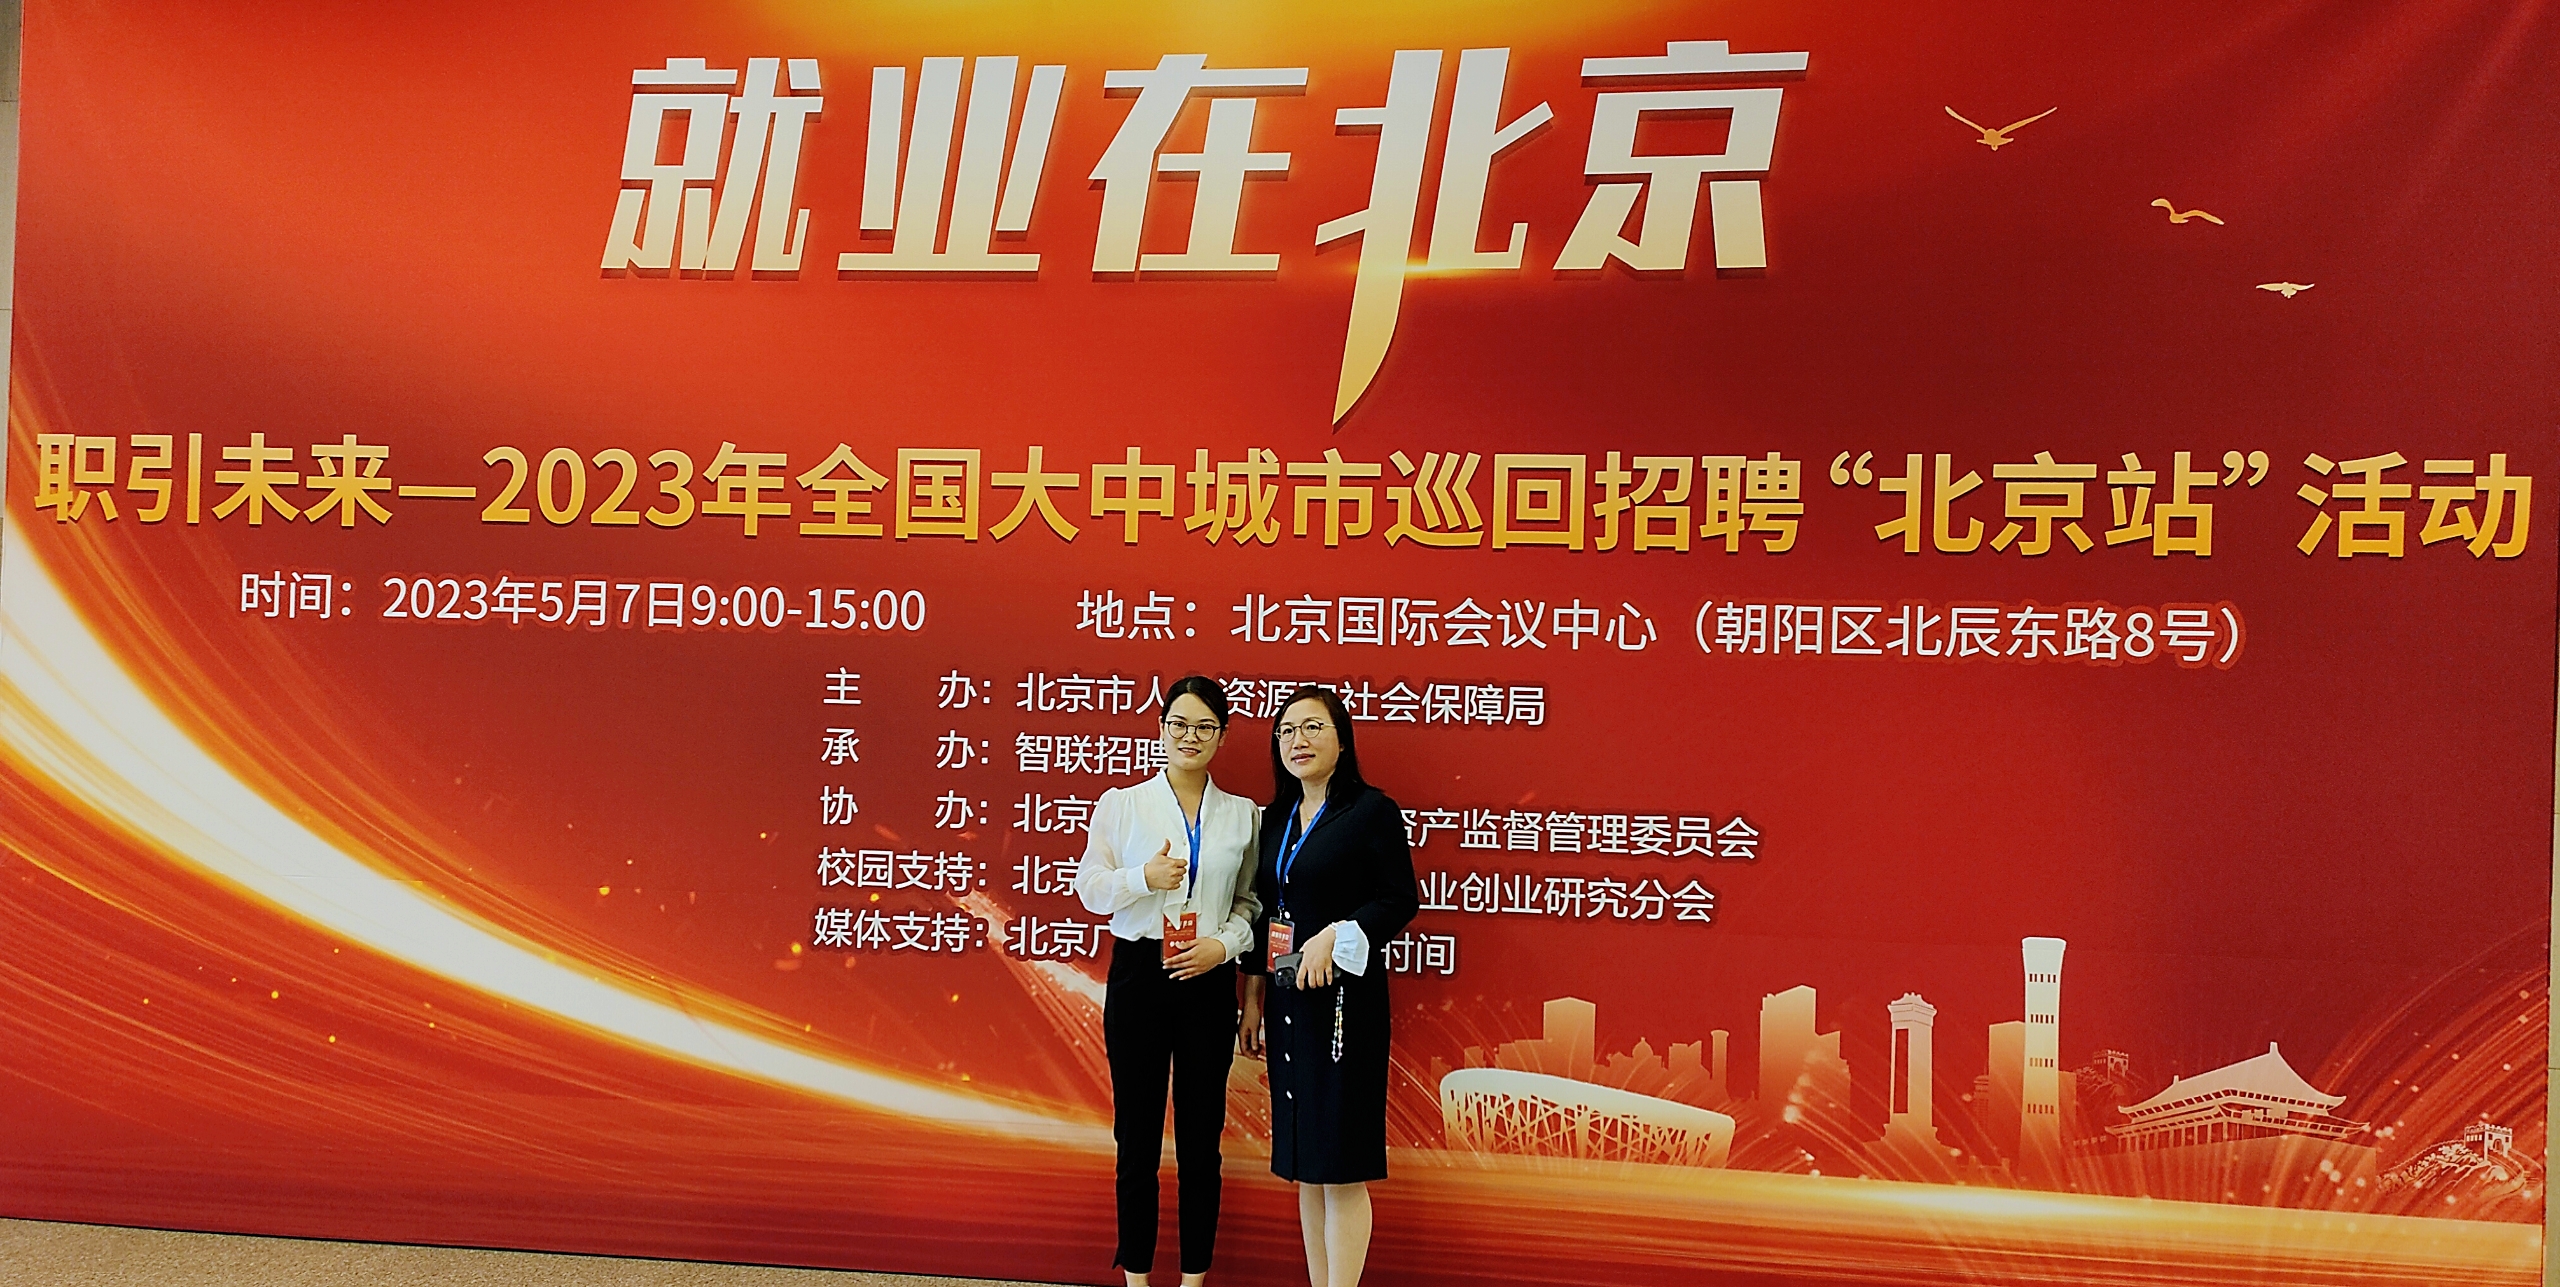 Kewei Steel participated in the offline job fair in Beijing